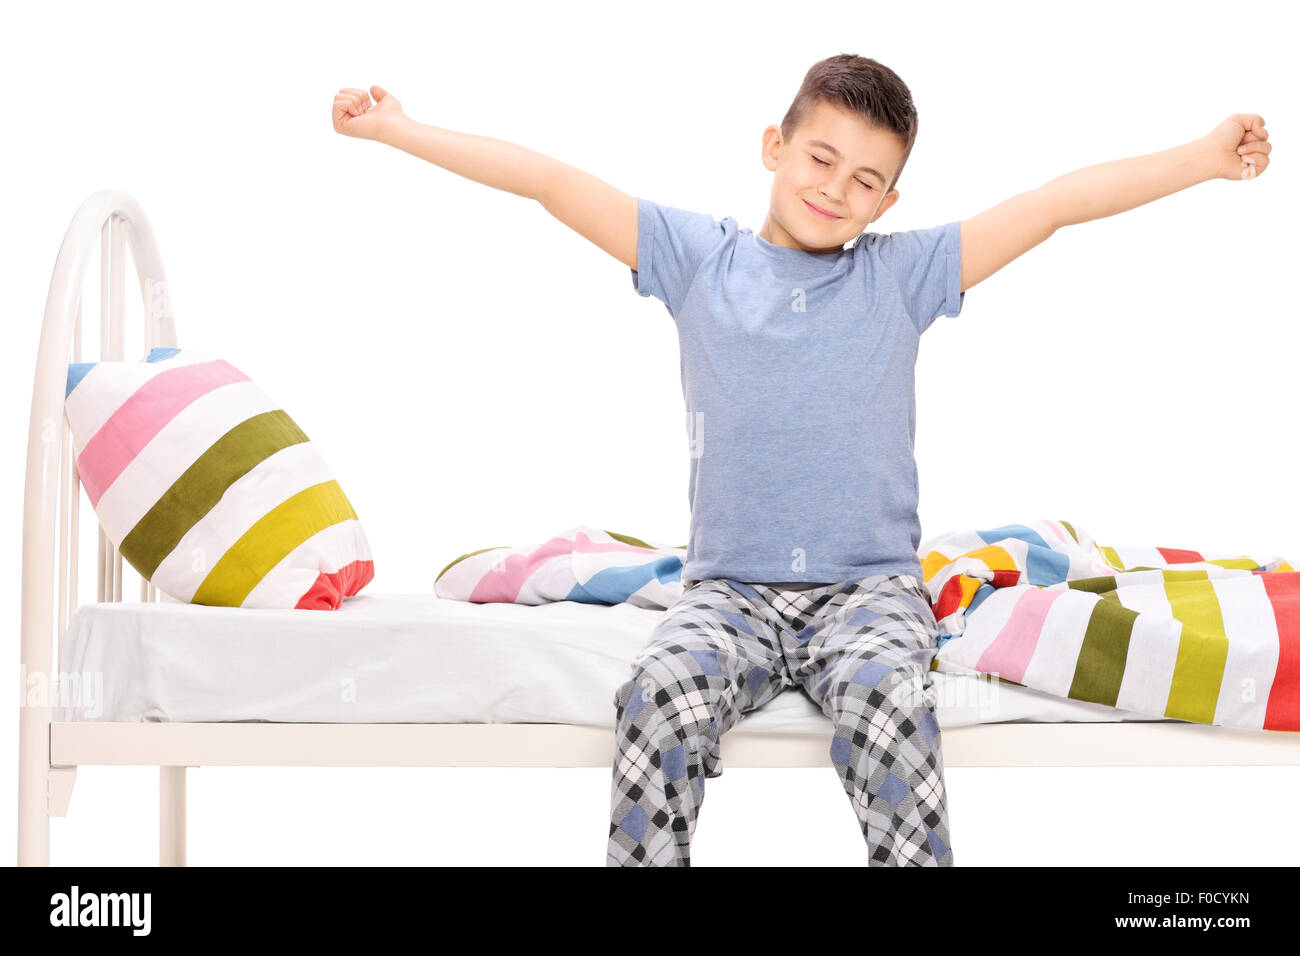 Mignon petit garçon en pyjama qui s'étend lui-même assis sur un lit isolated on white Banque D'Images